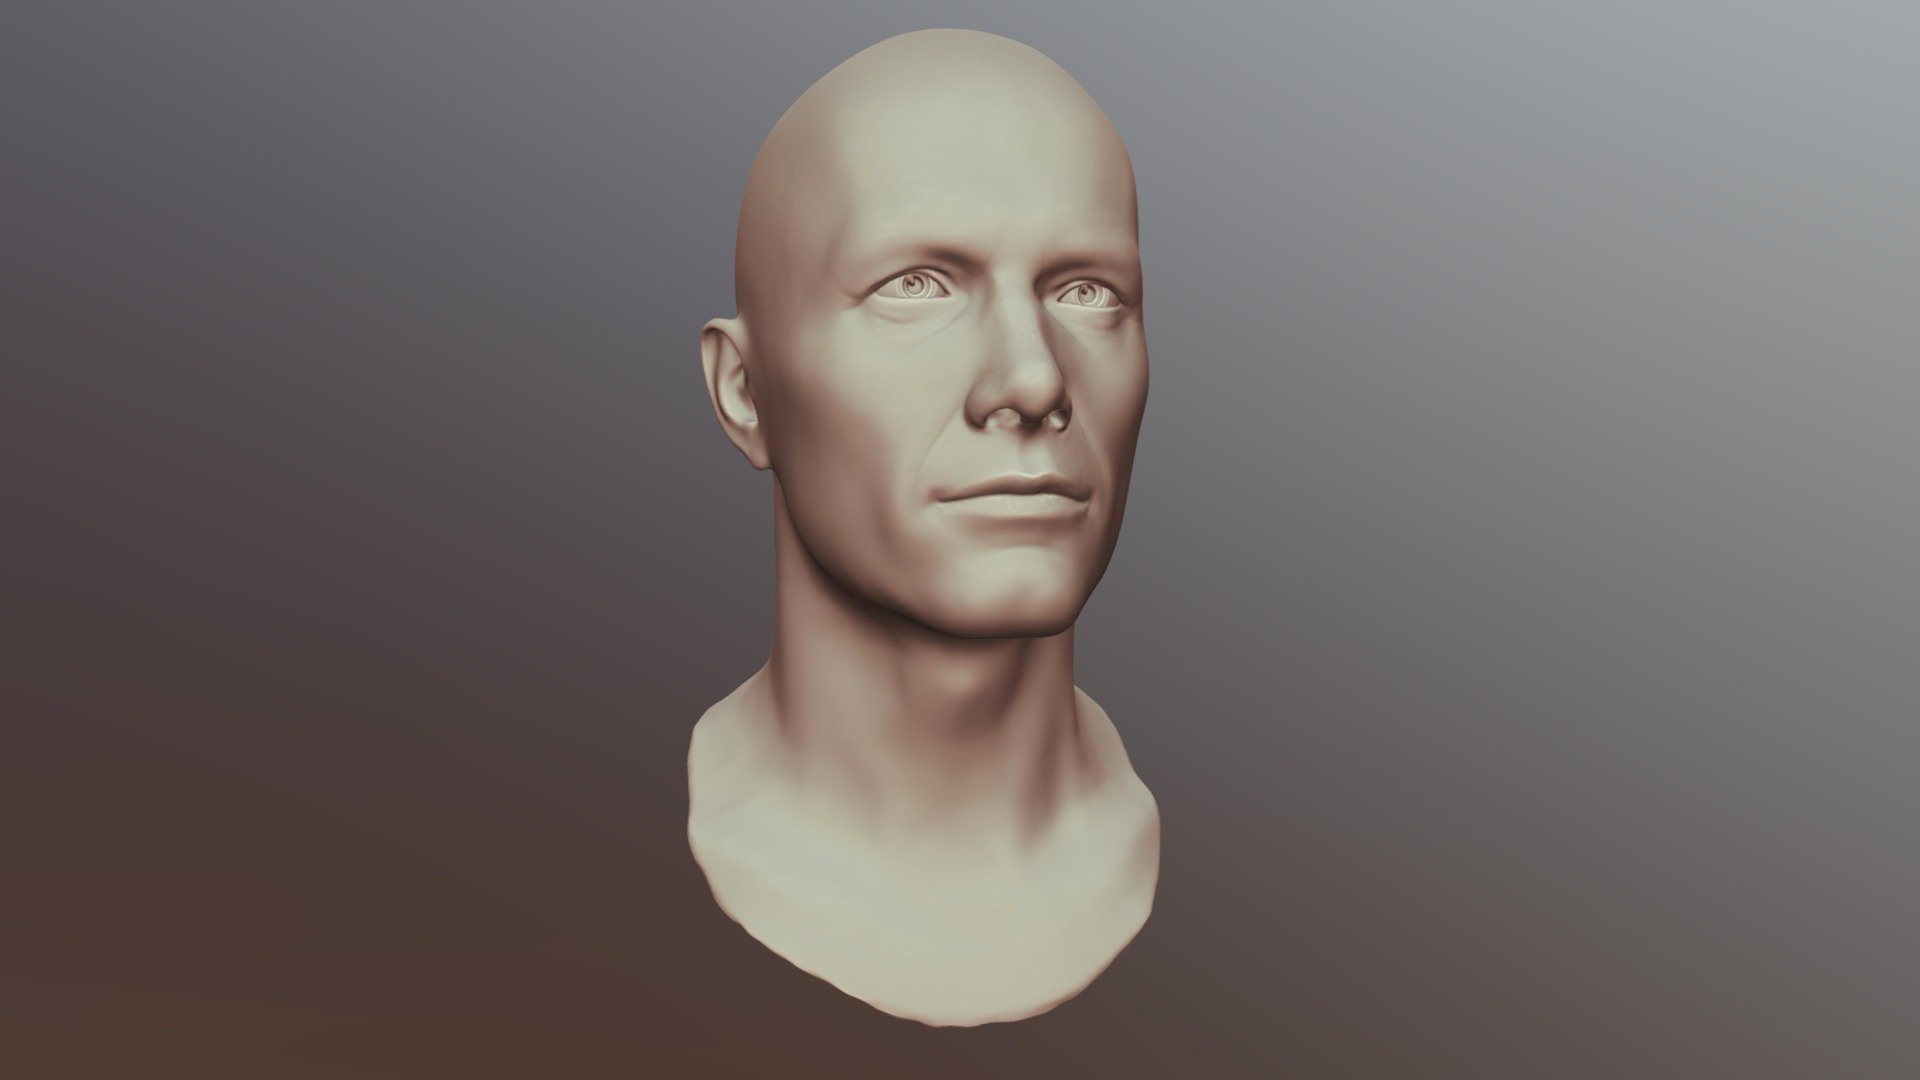 Male Head Sculpt 01 - Buy Royalty Free 3D model by Rumpelstiltskin